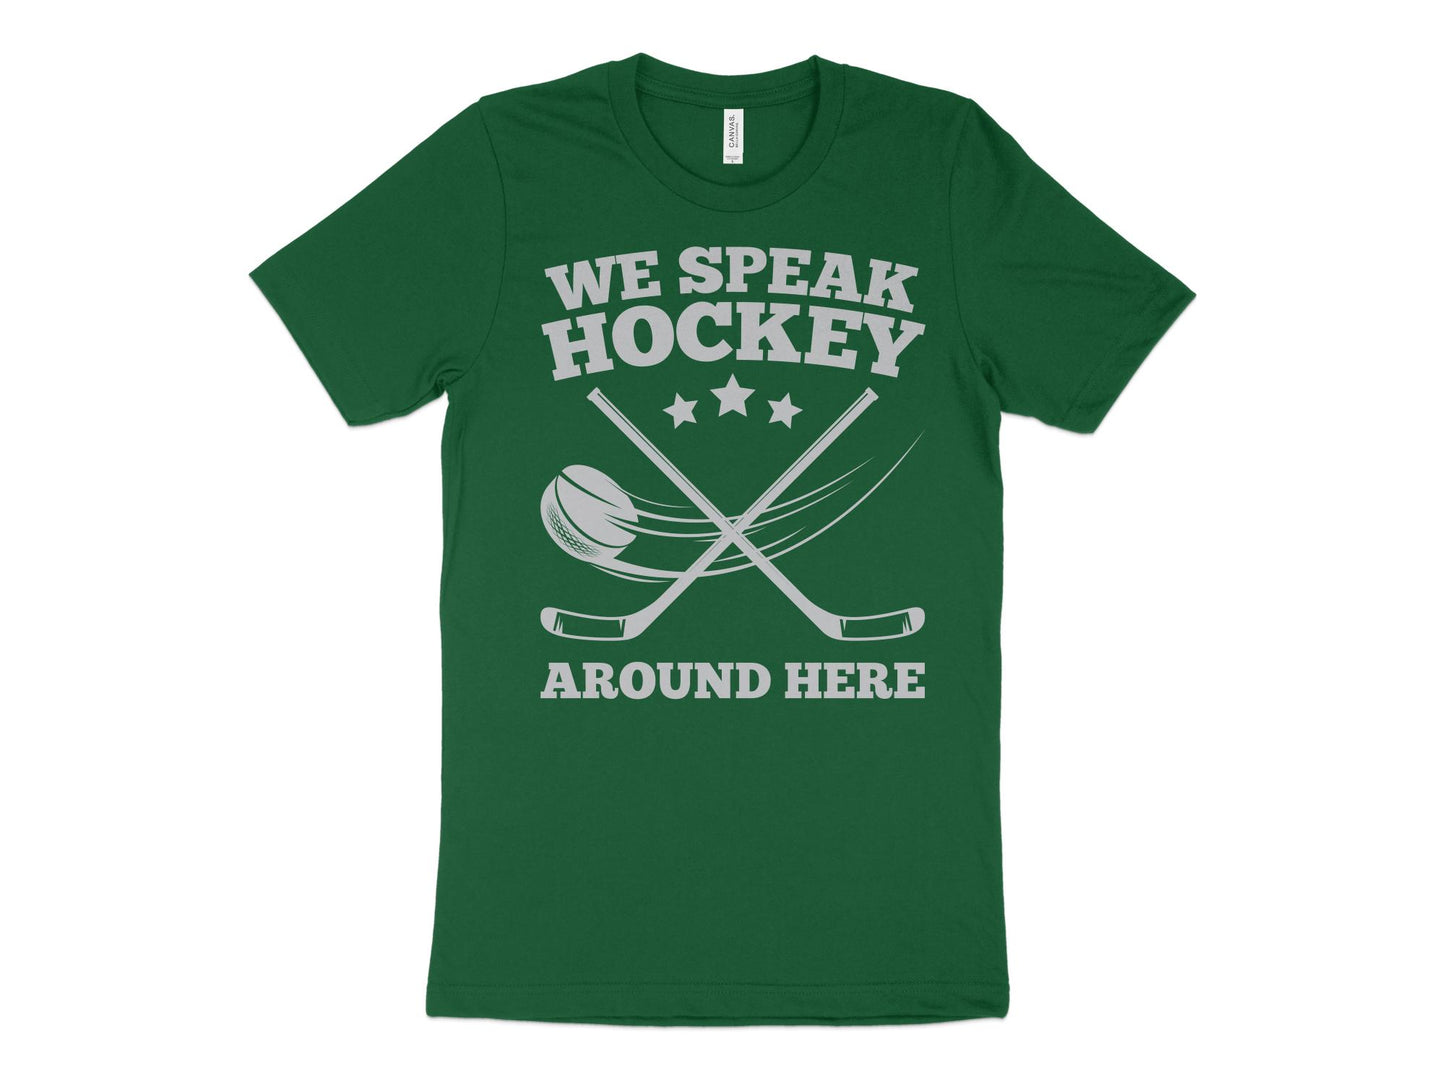 Funny Hockey Shirt - We Speak Hockey Around Here, green